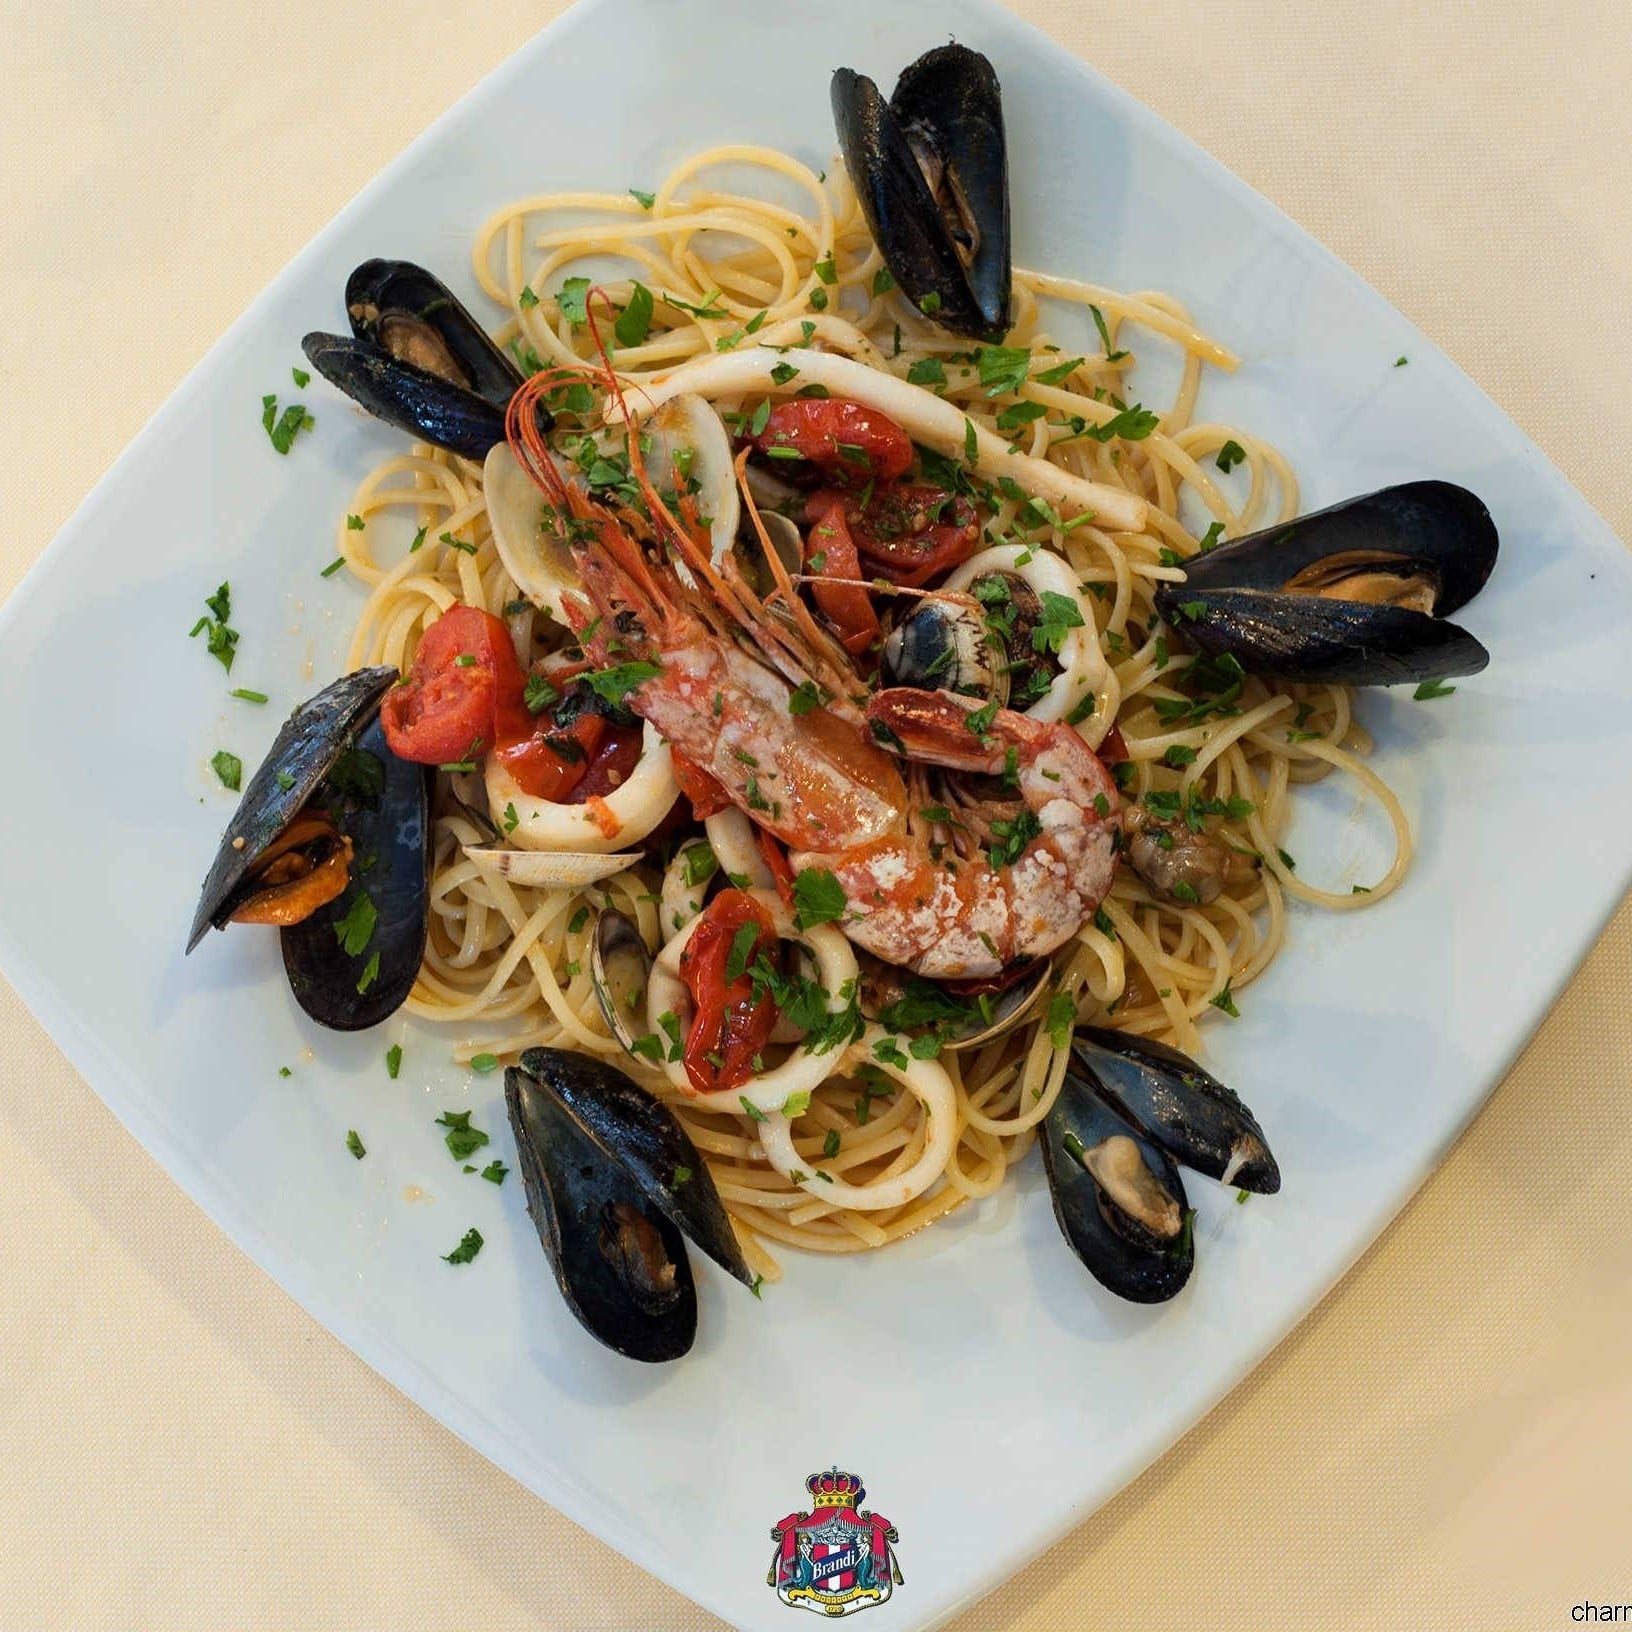 SPAGHETTI ALLA PESCATORA - Tomato sauce with mussels, clams, shrimps - € 9.00